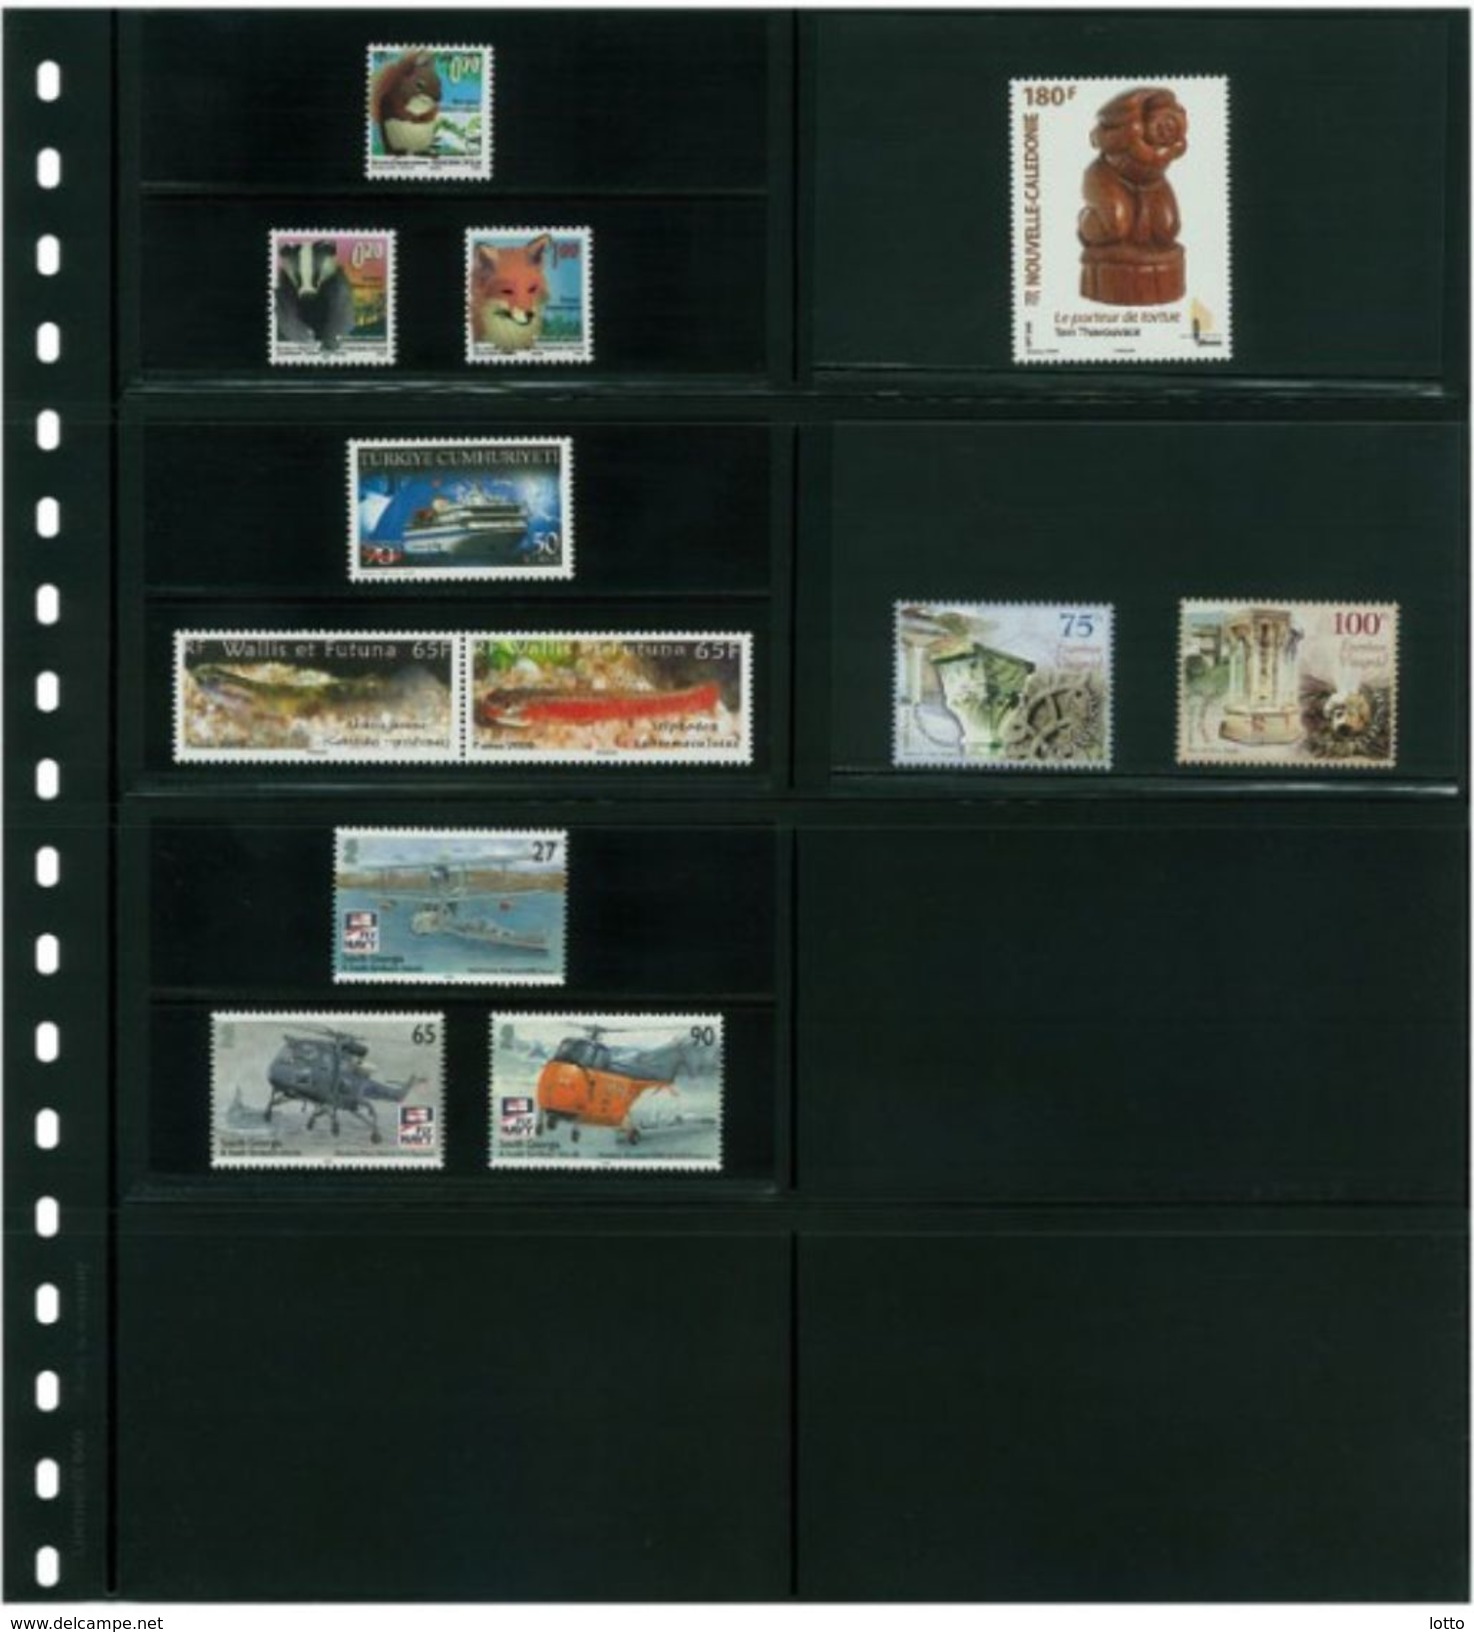 Lindner Omnia Klemmkartenblatt Mit 8 Taschen (120 X 66 Mm) Pro Seite, Schwarz +++ NEU OVP +++ (040) - Blank Pages